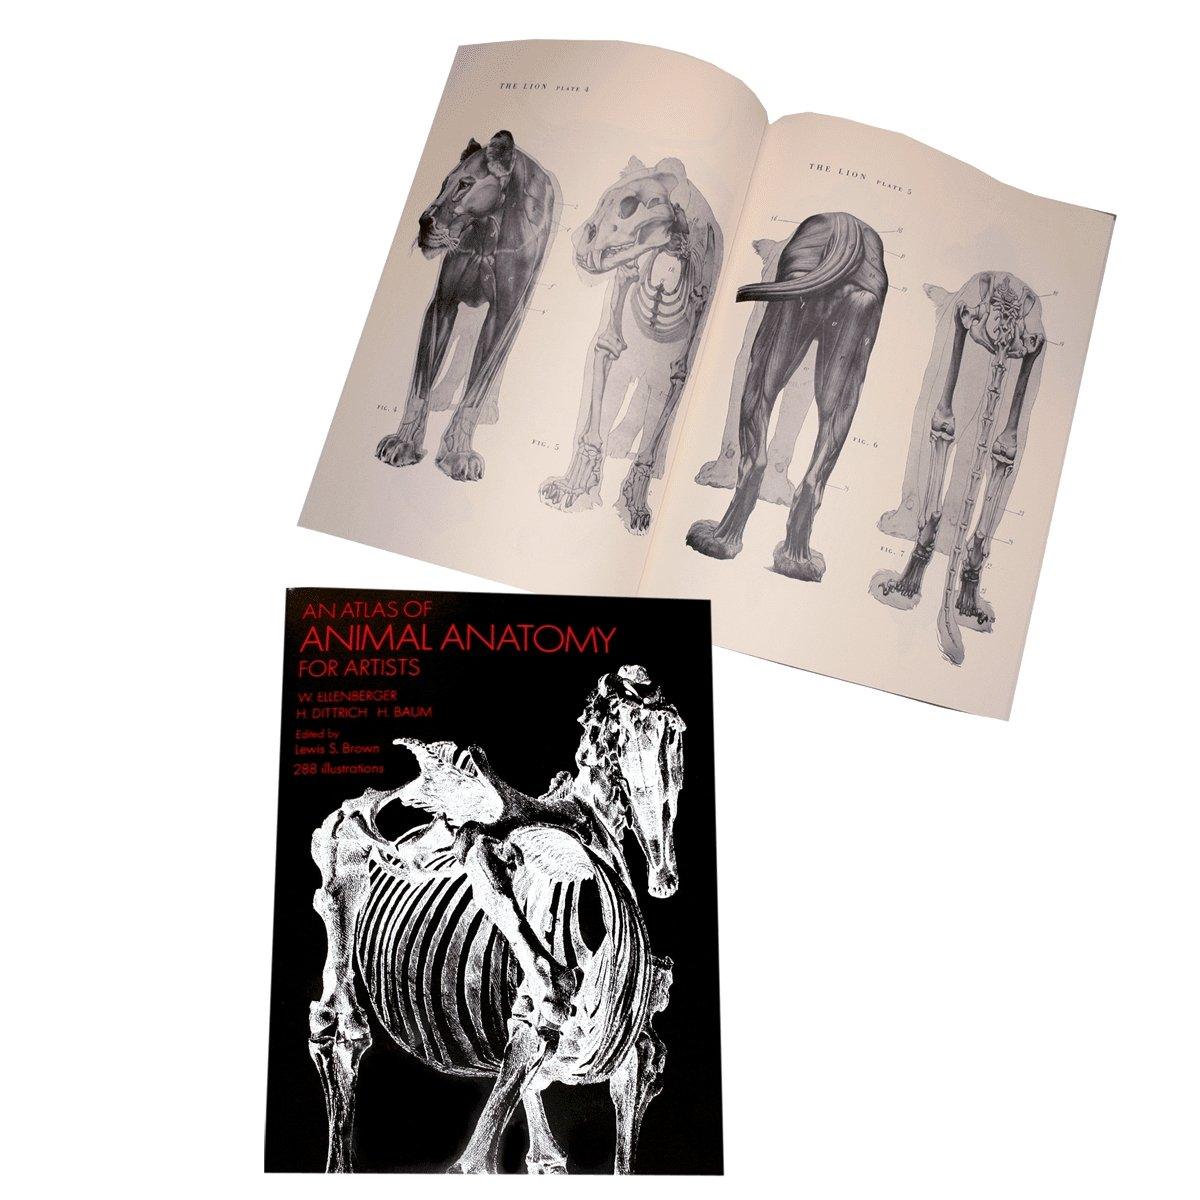 Atlas of Animal Anatomy - Matuska Taxidermy Supply Company